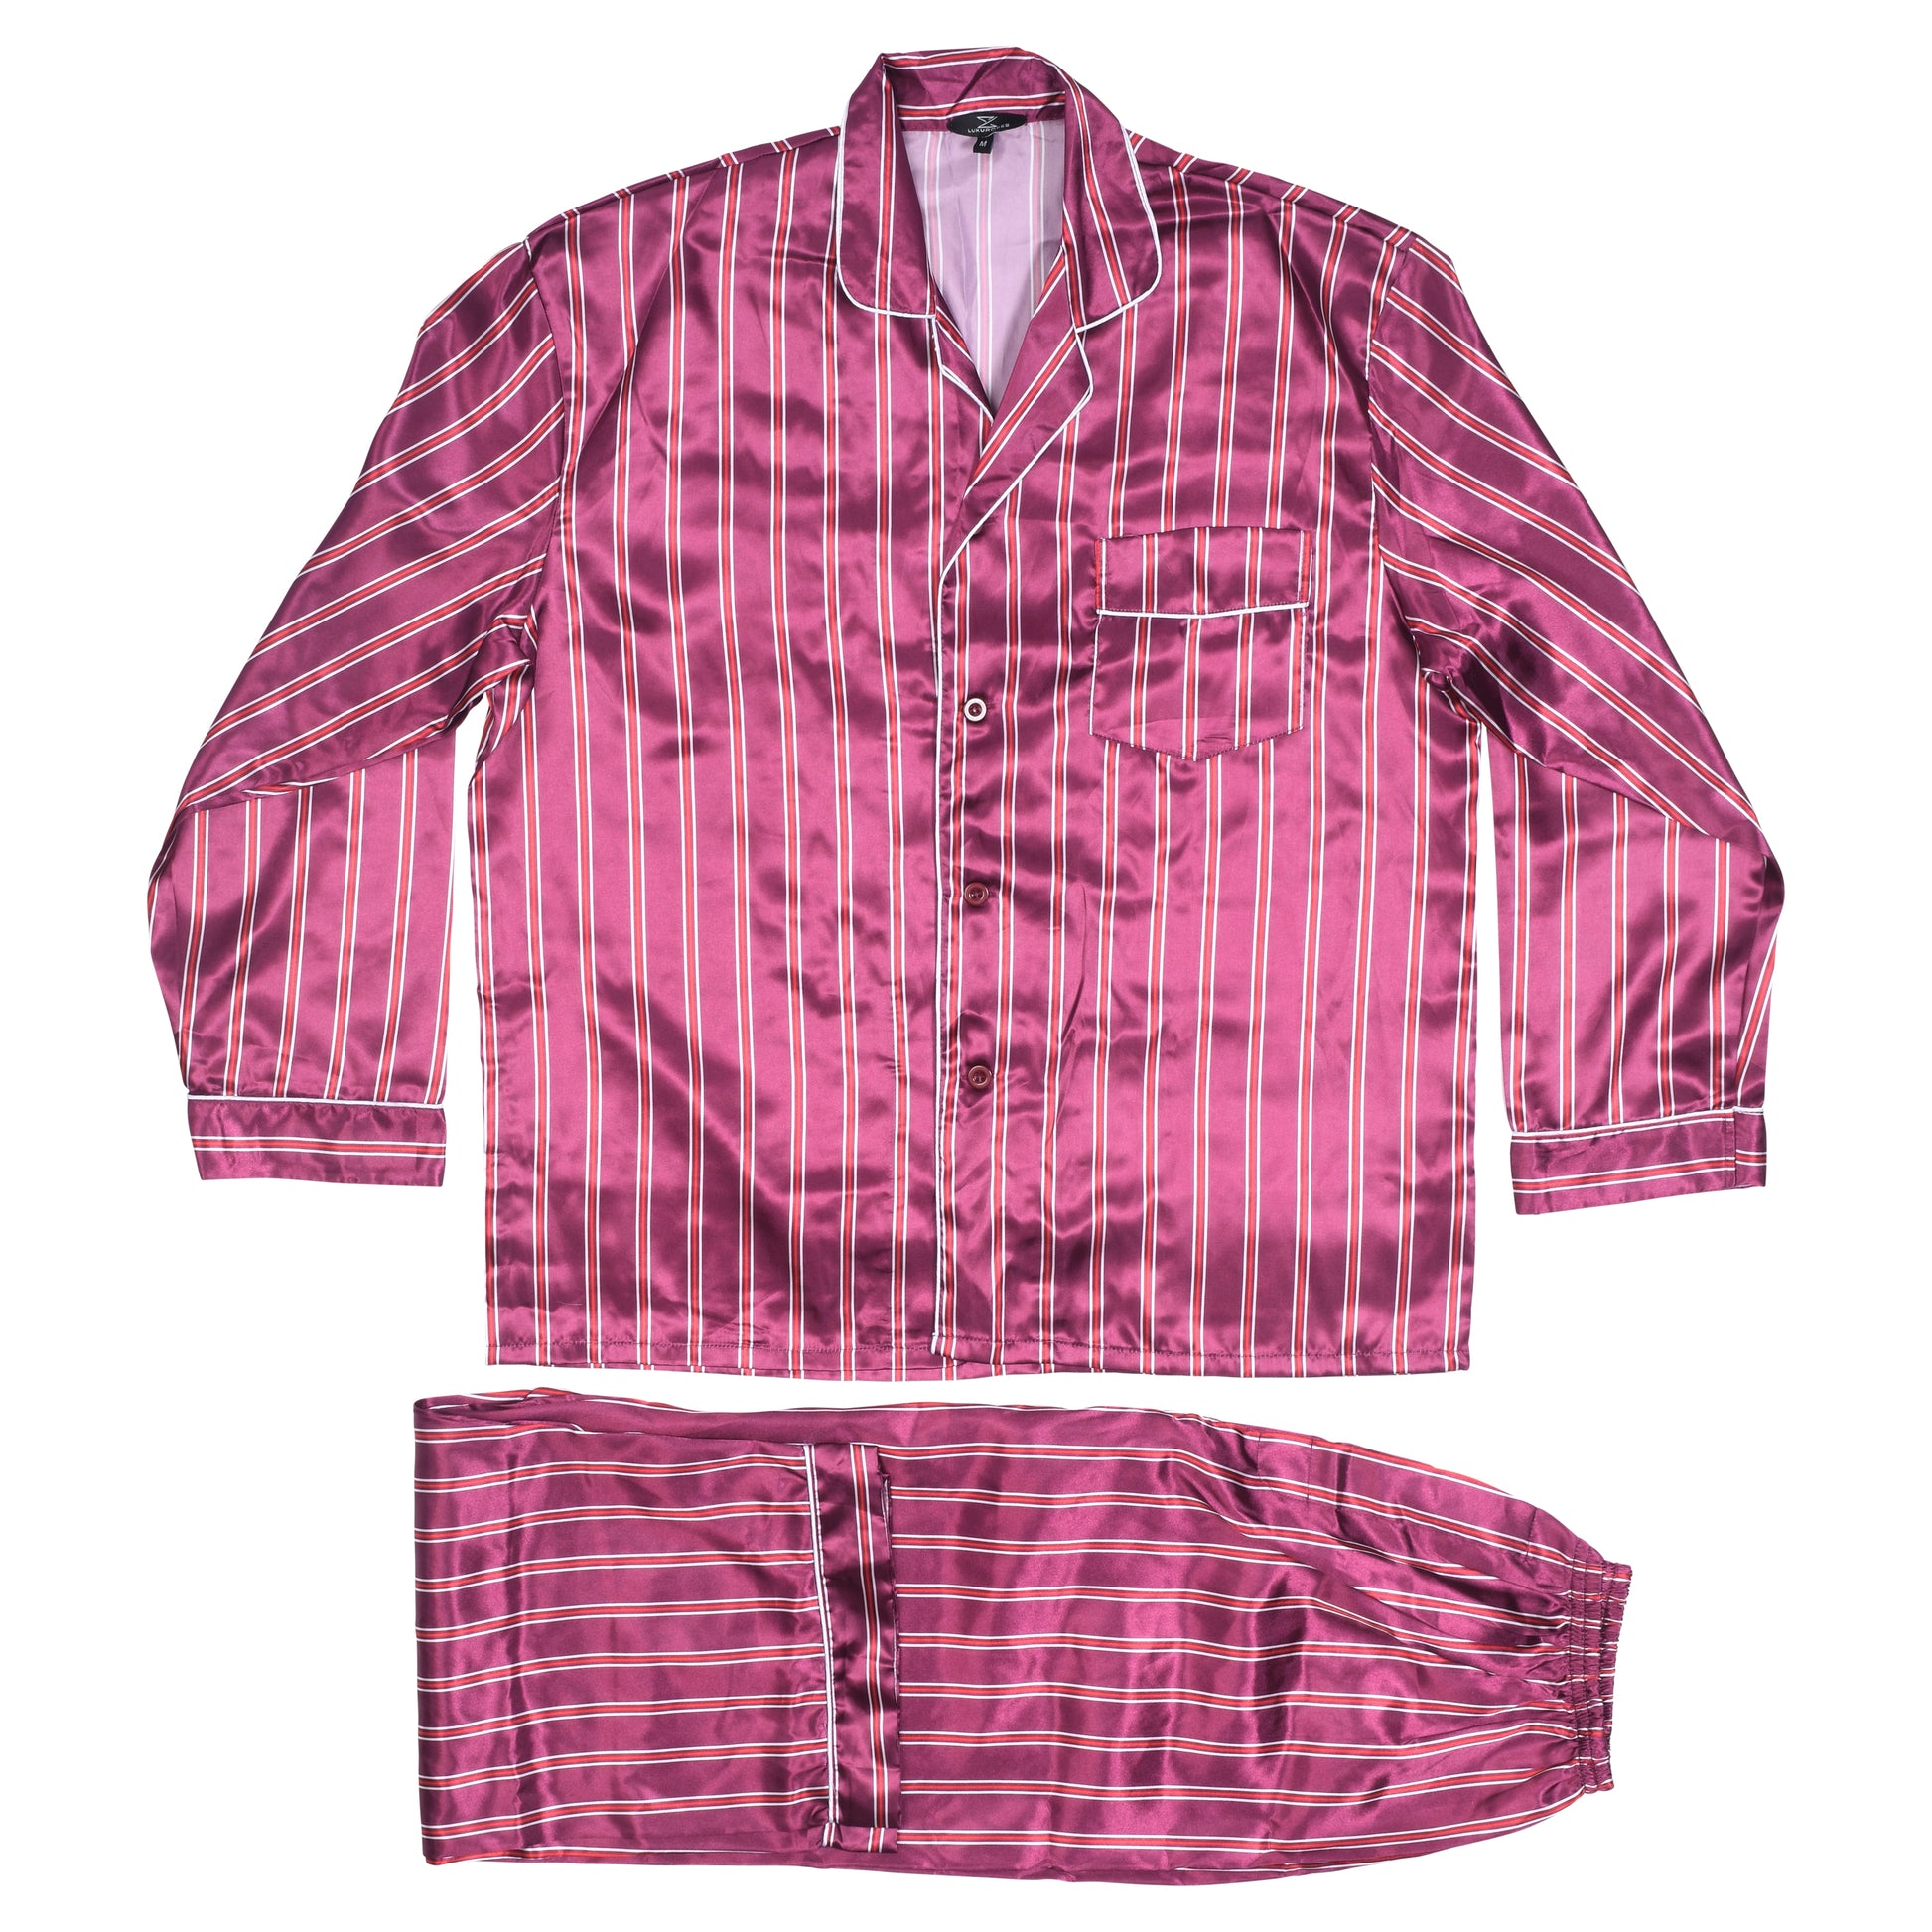 Mens Silk Satin Pajamas - PJ Set Top and Bottom - Burgundy White Piping